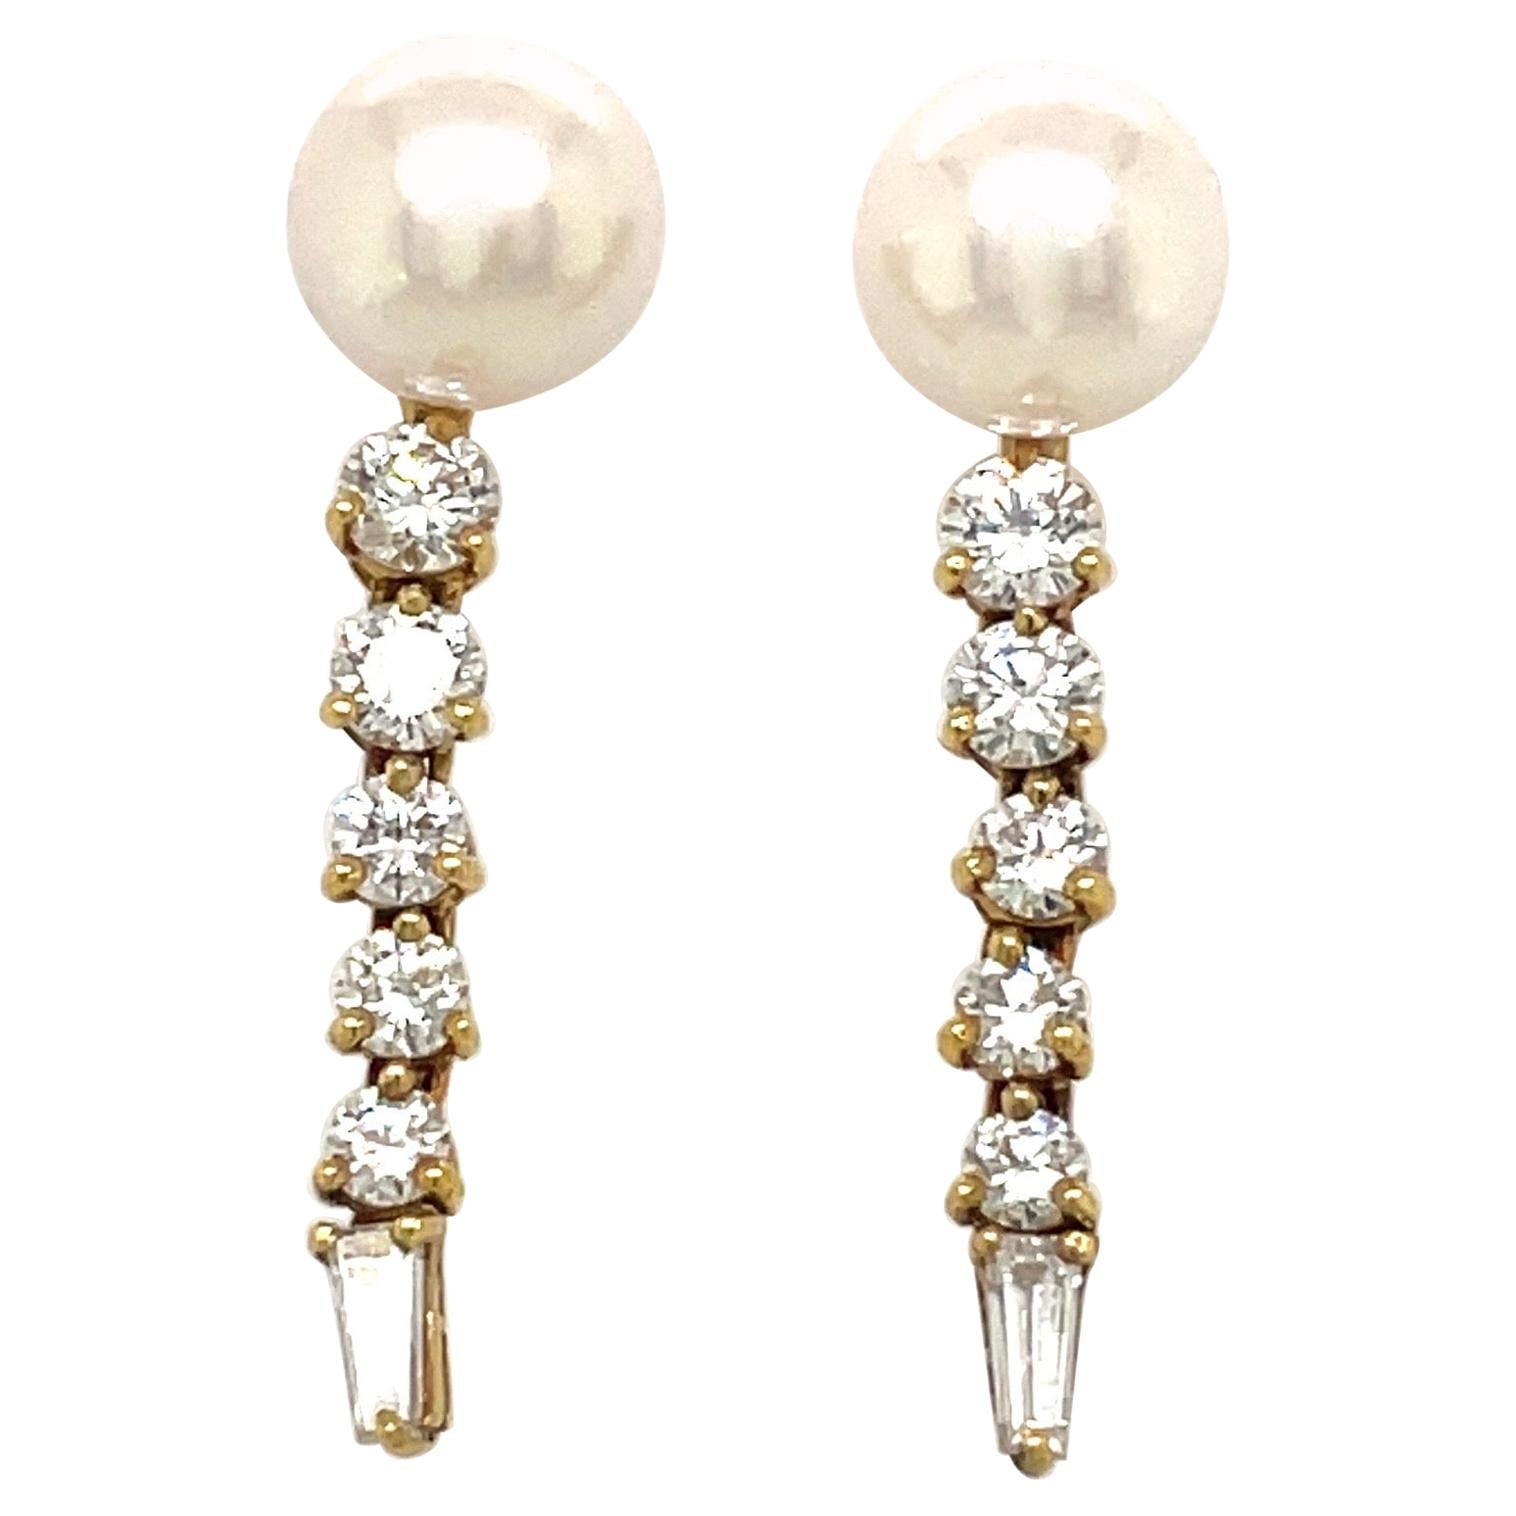 Honora, perle et diamant en or jaune 18 carats 1,33 carat. Boucles d'oreilles suspendues